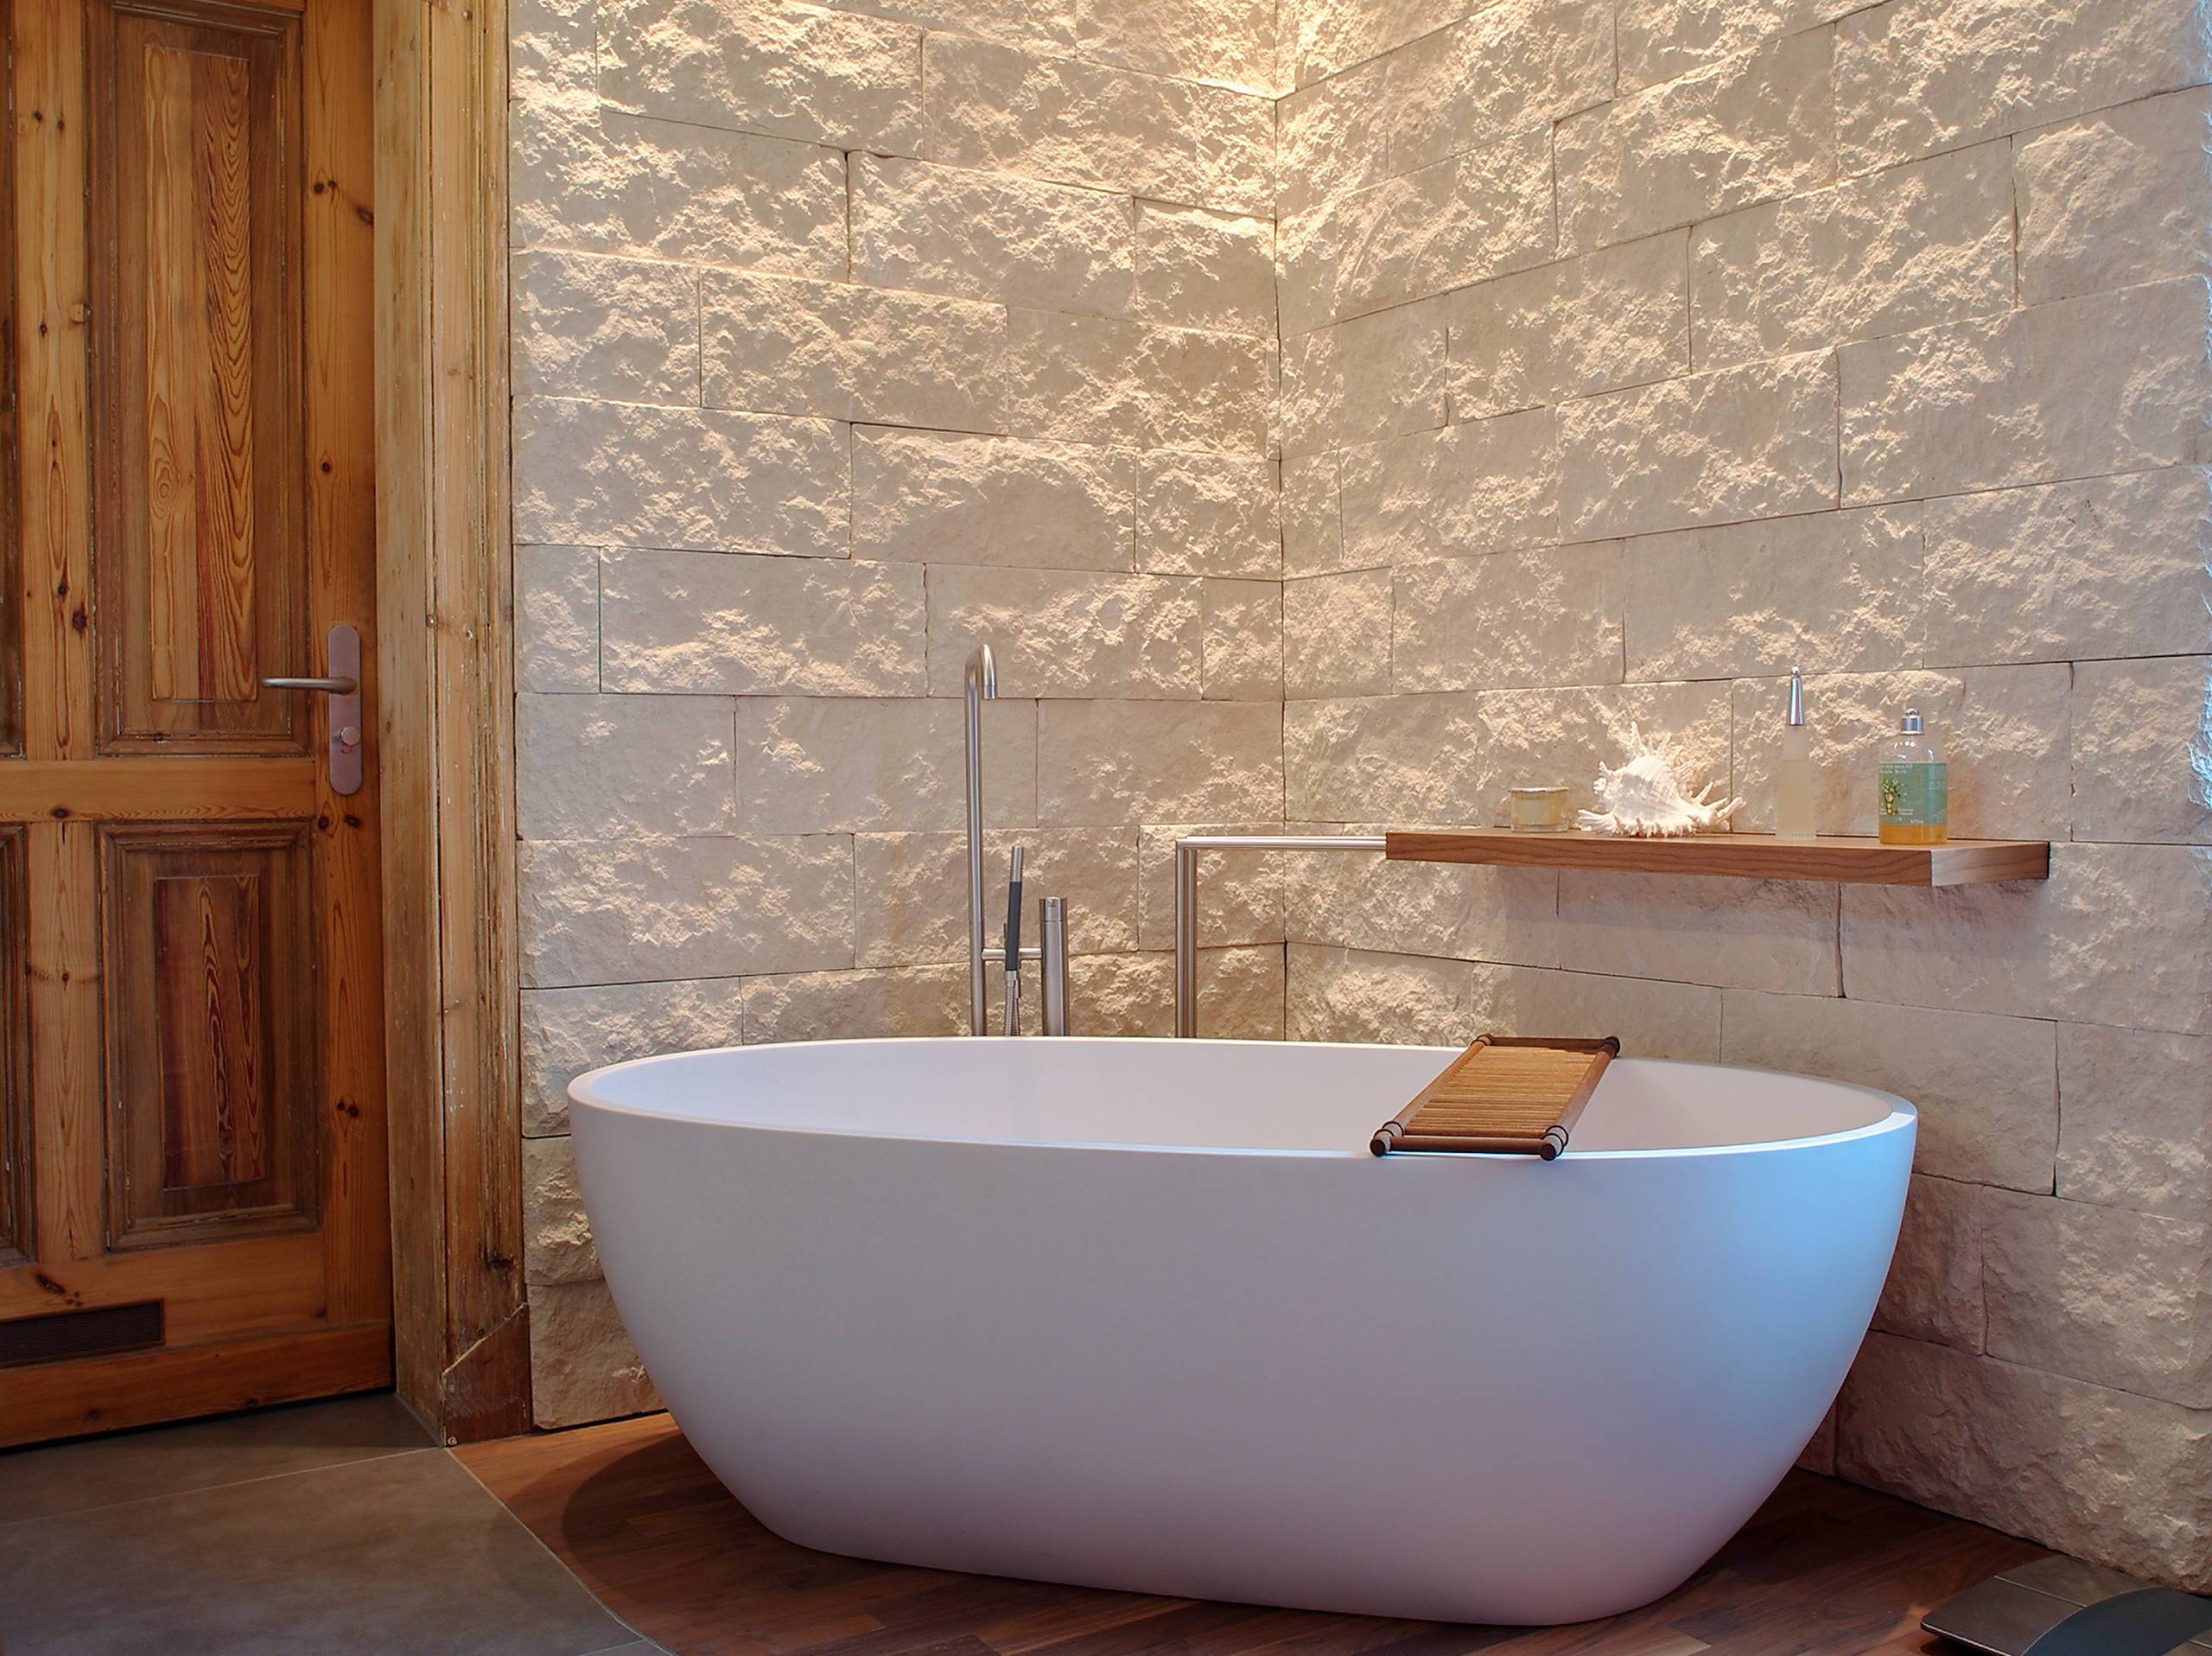 Чем можно отделать стены в ванной, кроме плитки? Аналоги керамики